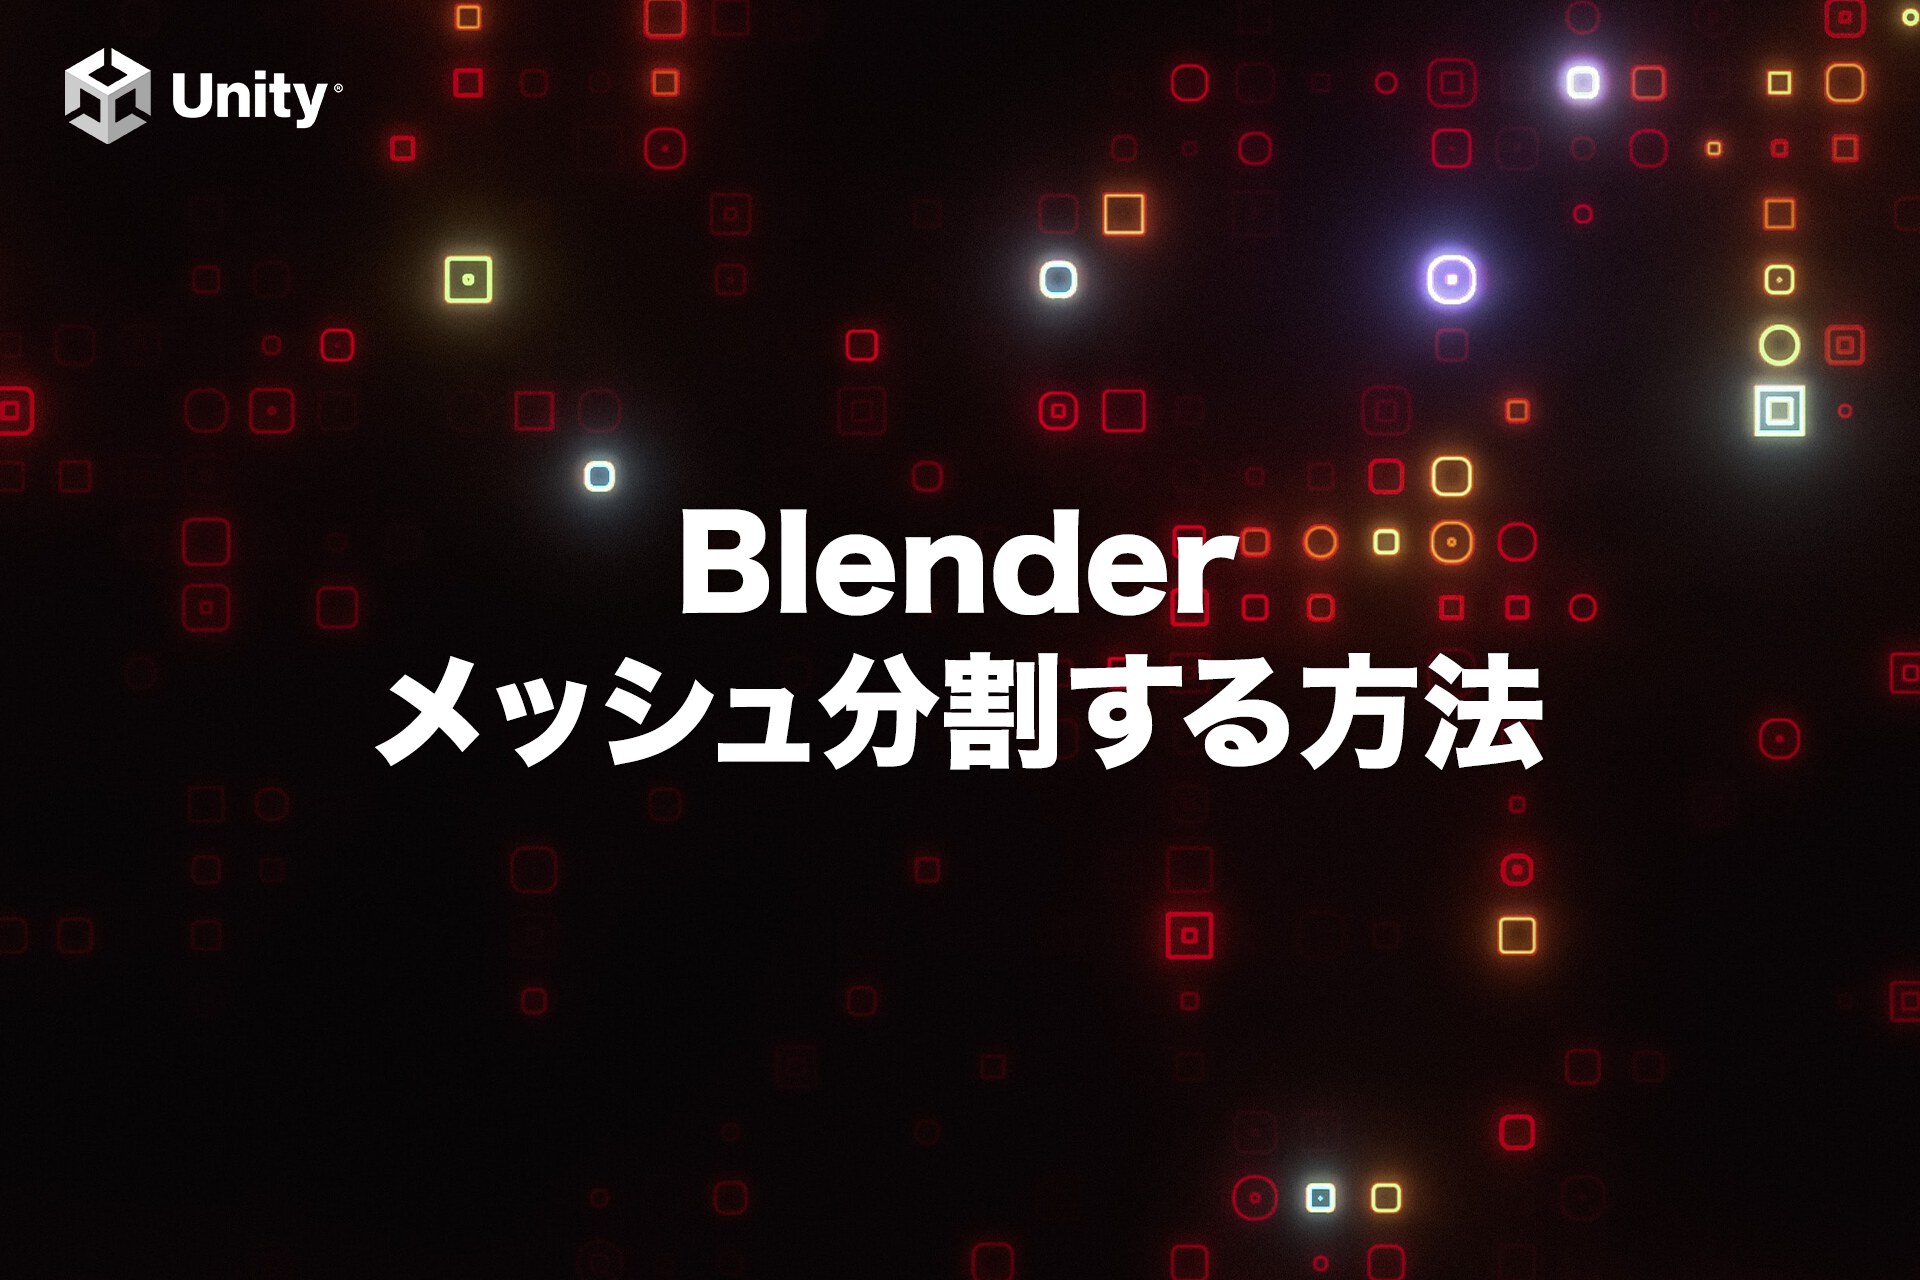 【初心者向け】Blenderで頂点の追加とメッシュ分割する方法